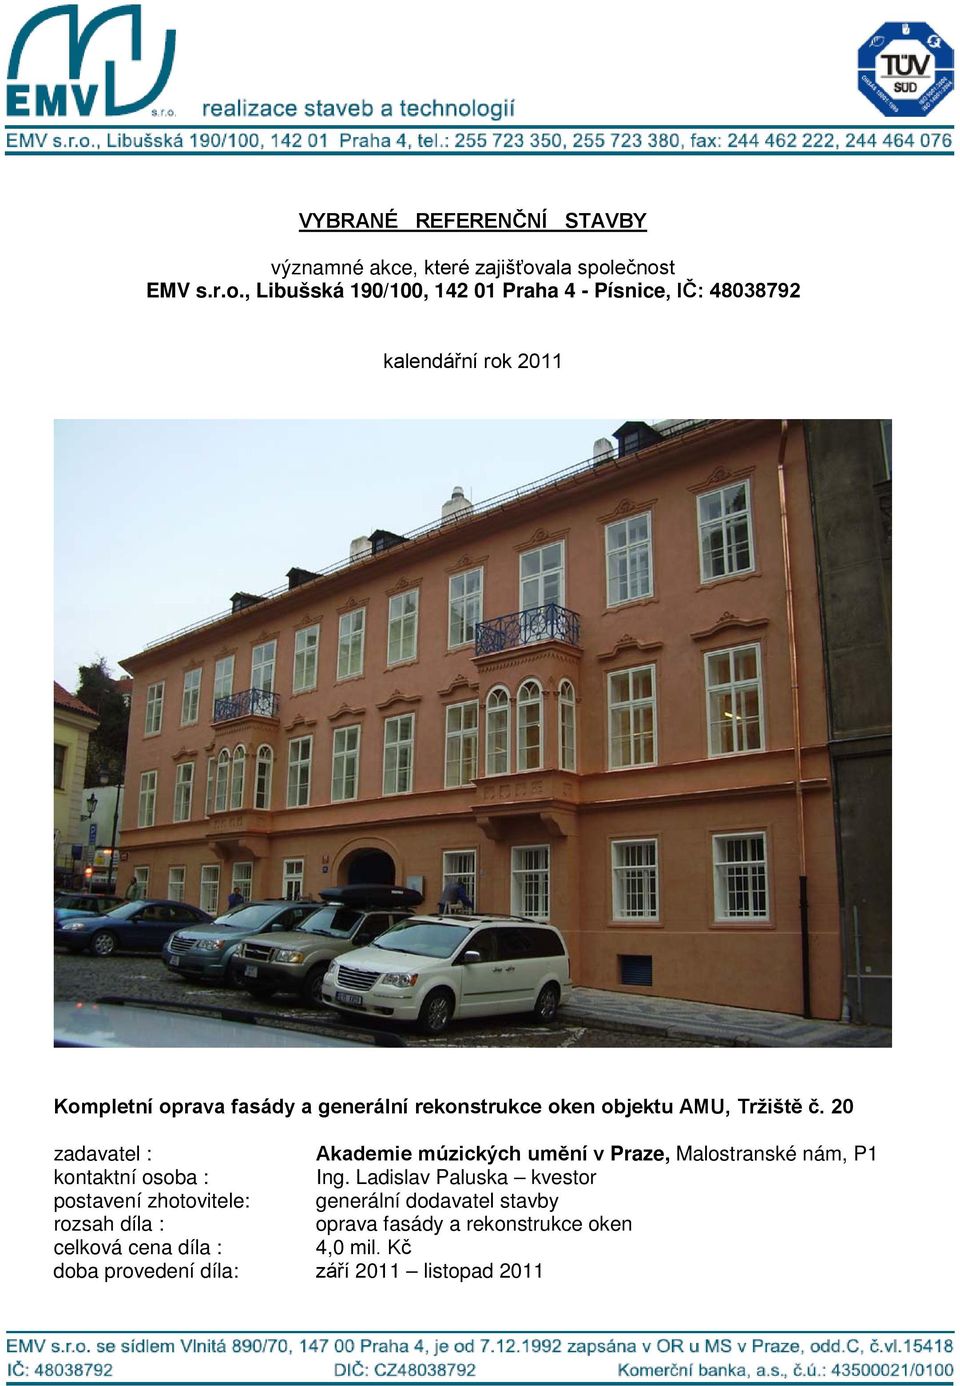 20 Akademie múzických umění v Praze, Malostranské nám, P1 Ing.